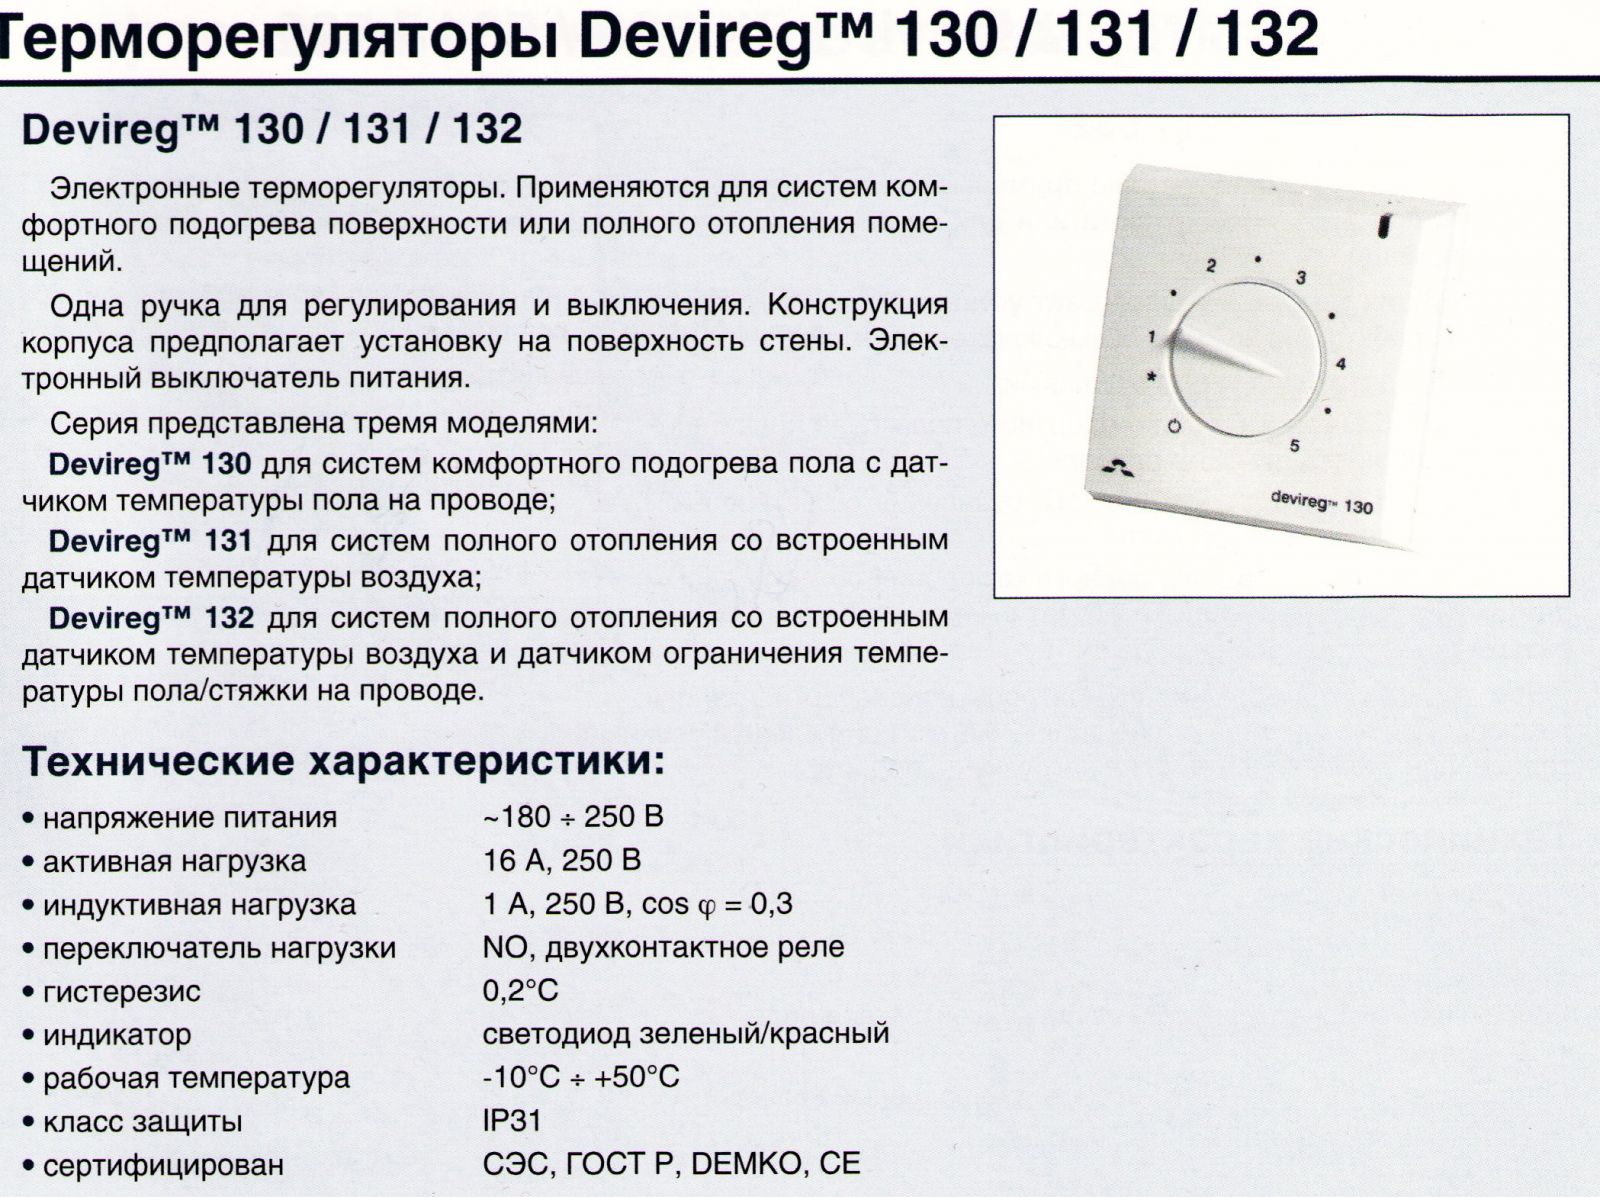 Схема терморегулятора Devireg 130, 131, 132